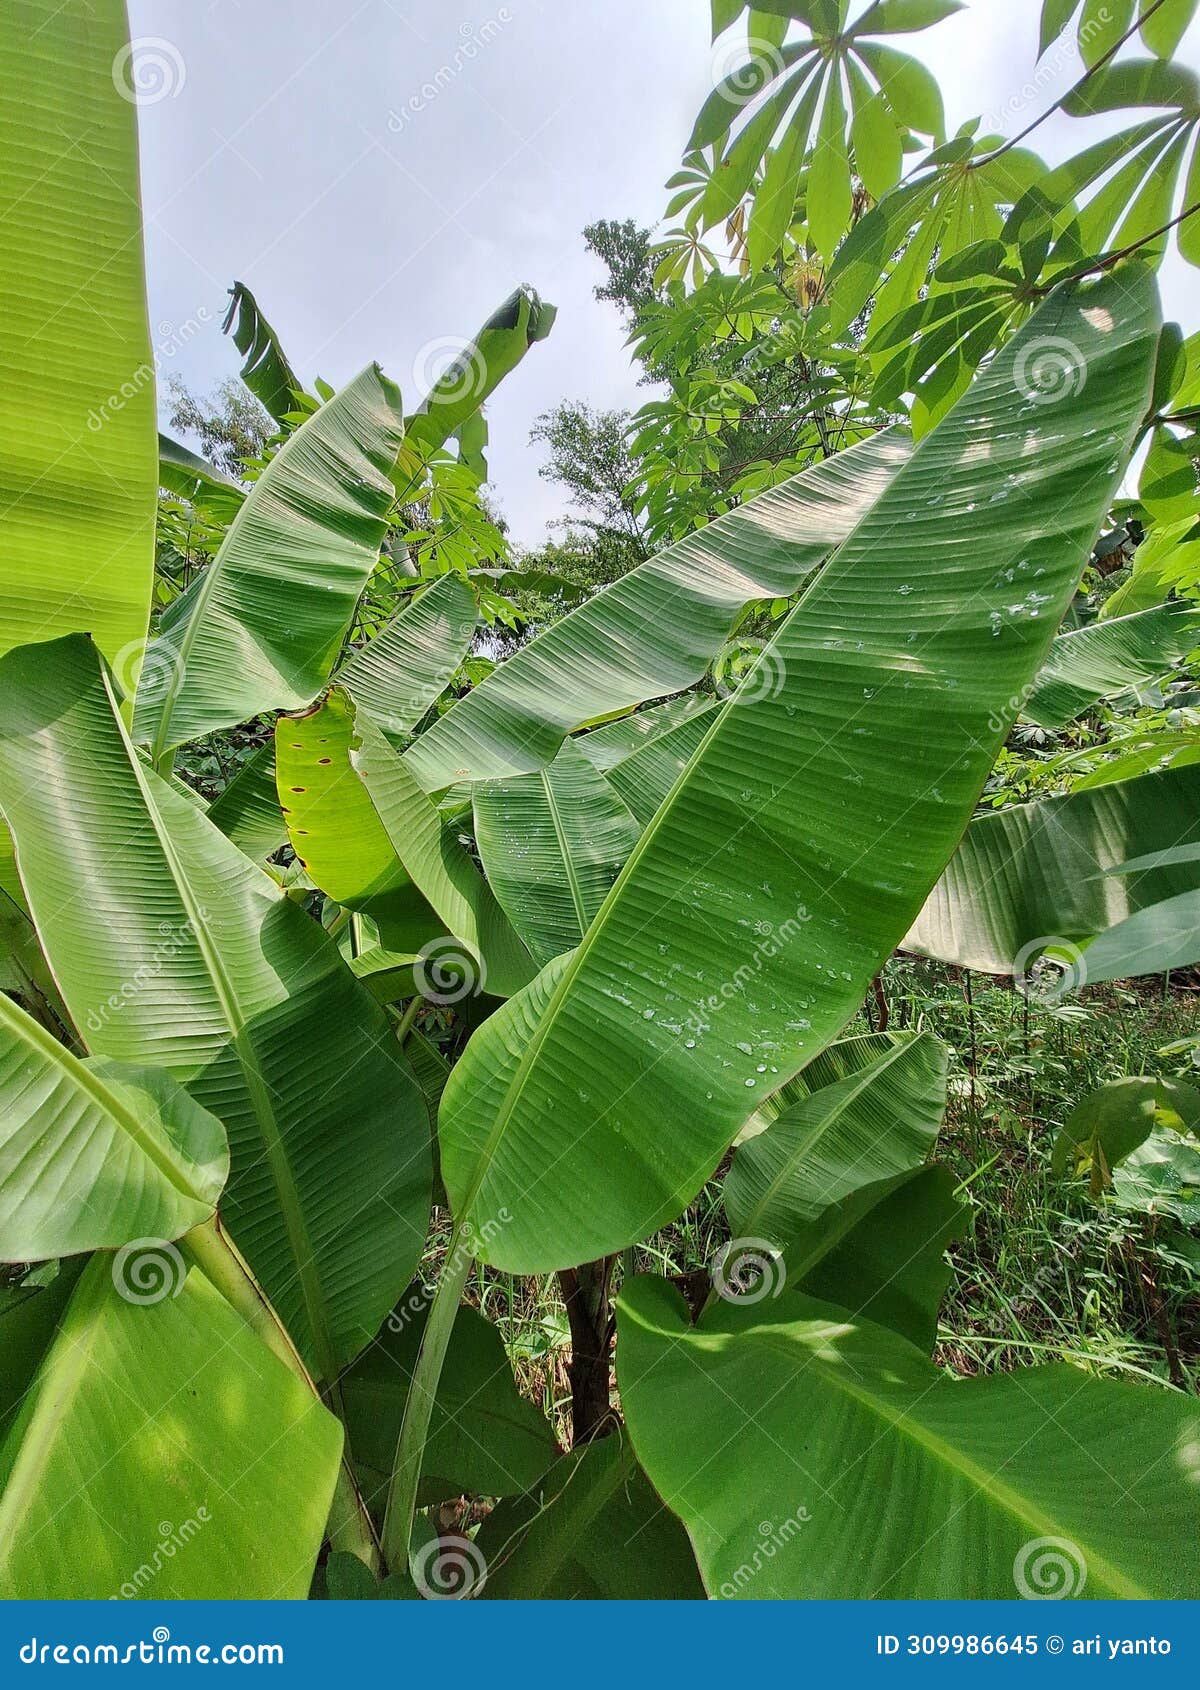 daun pisang